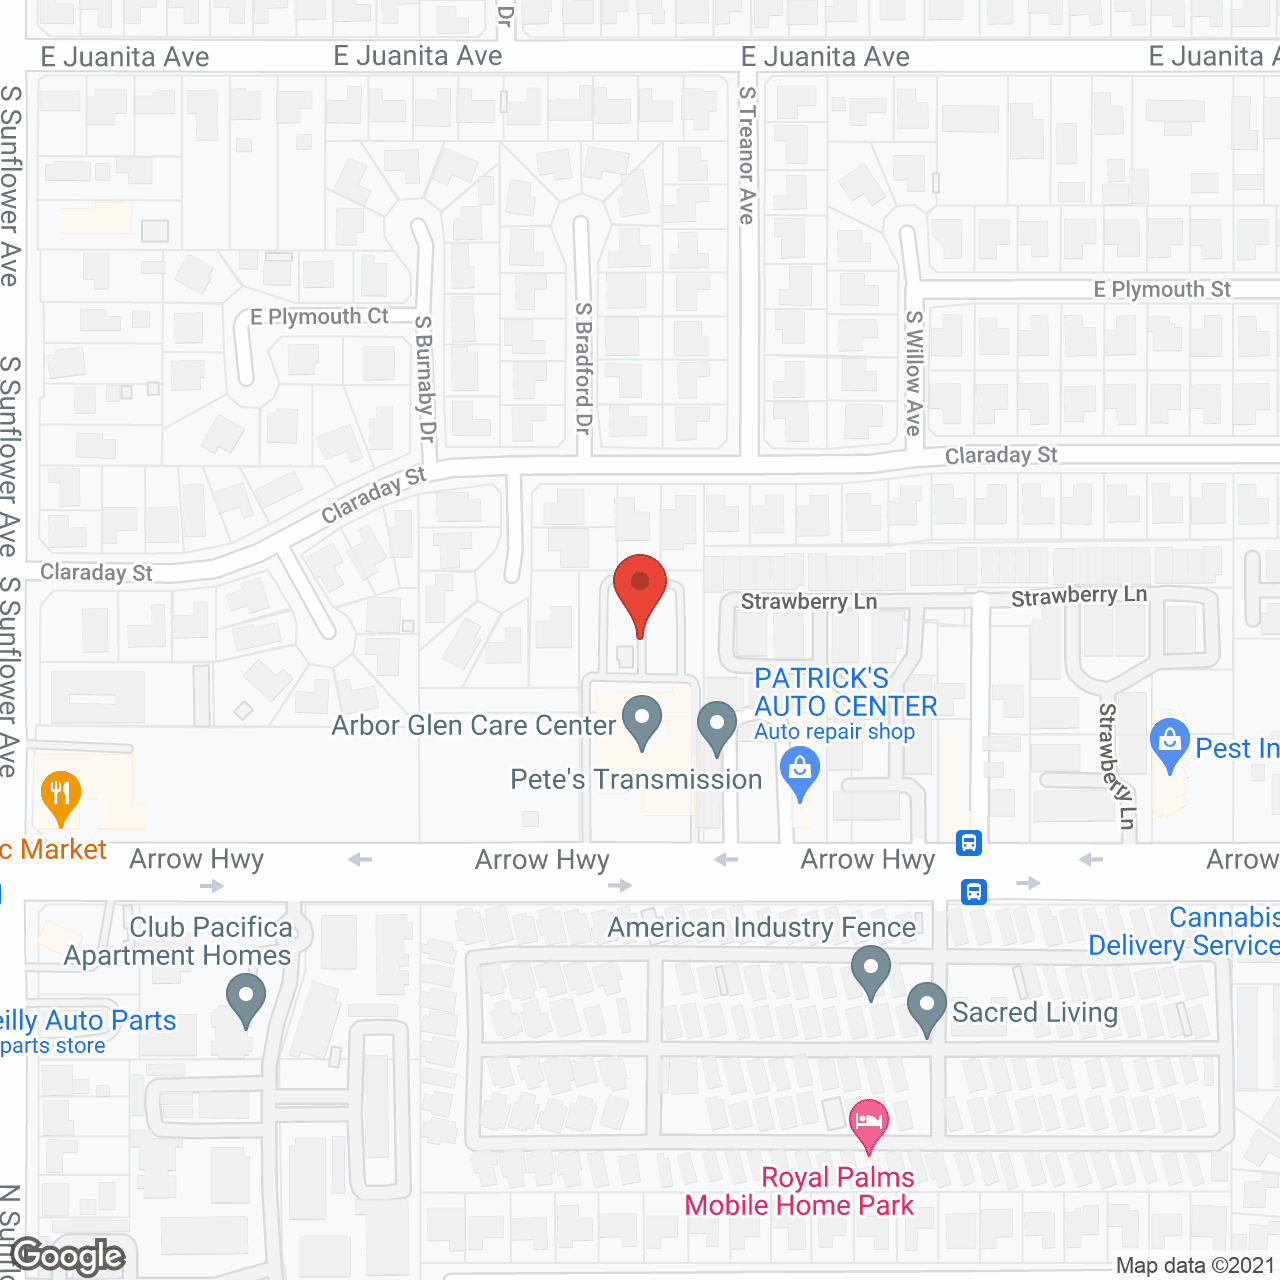 Arbor Glen Care Center in google map